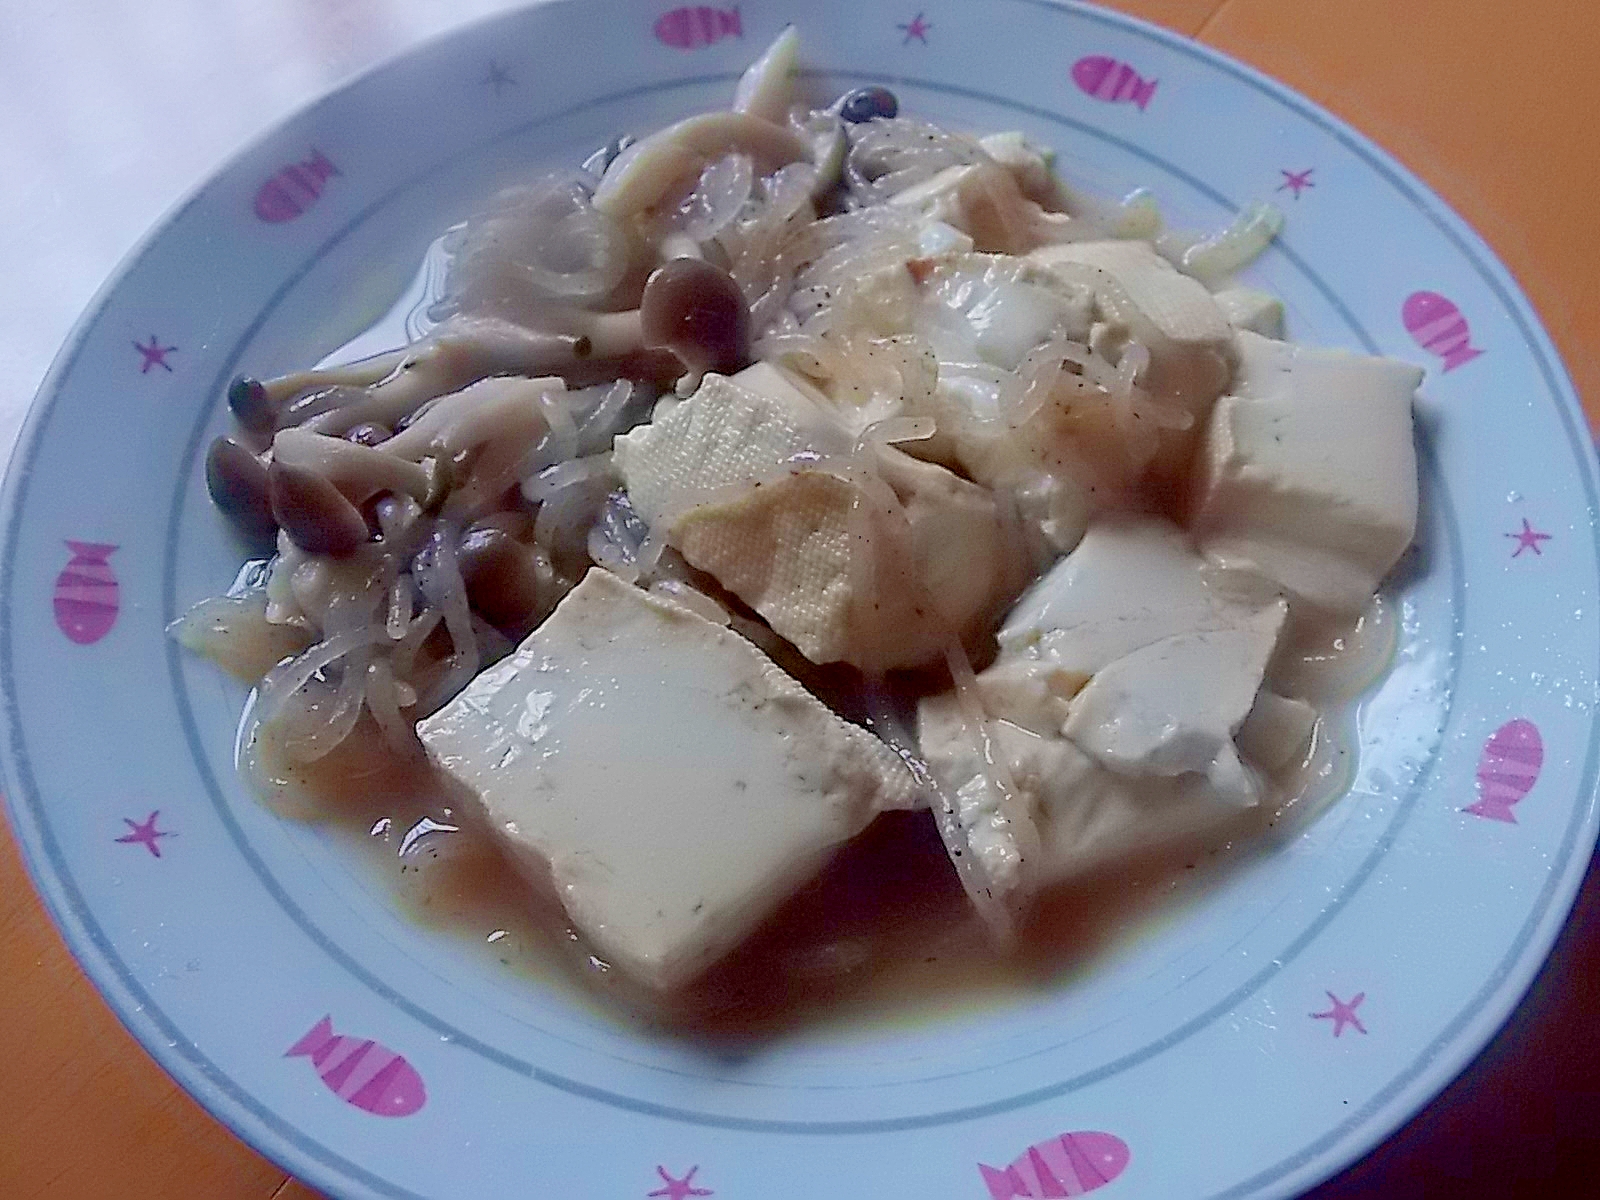 豆腐とシメジと糸コンの煮物